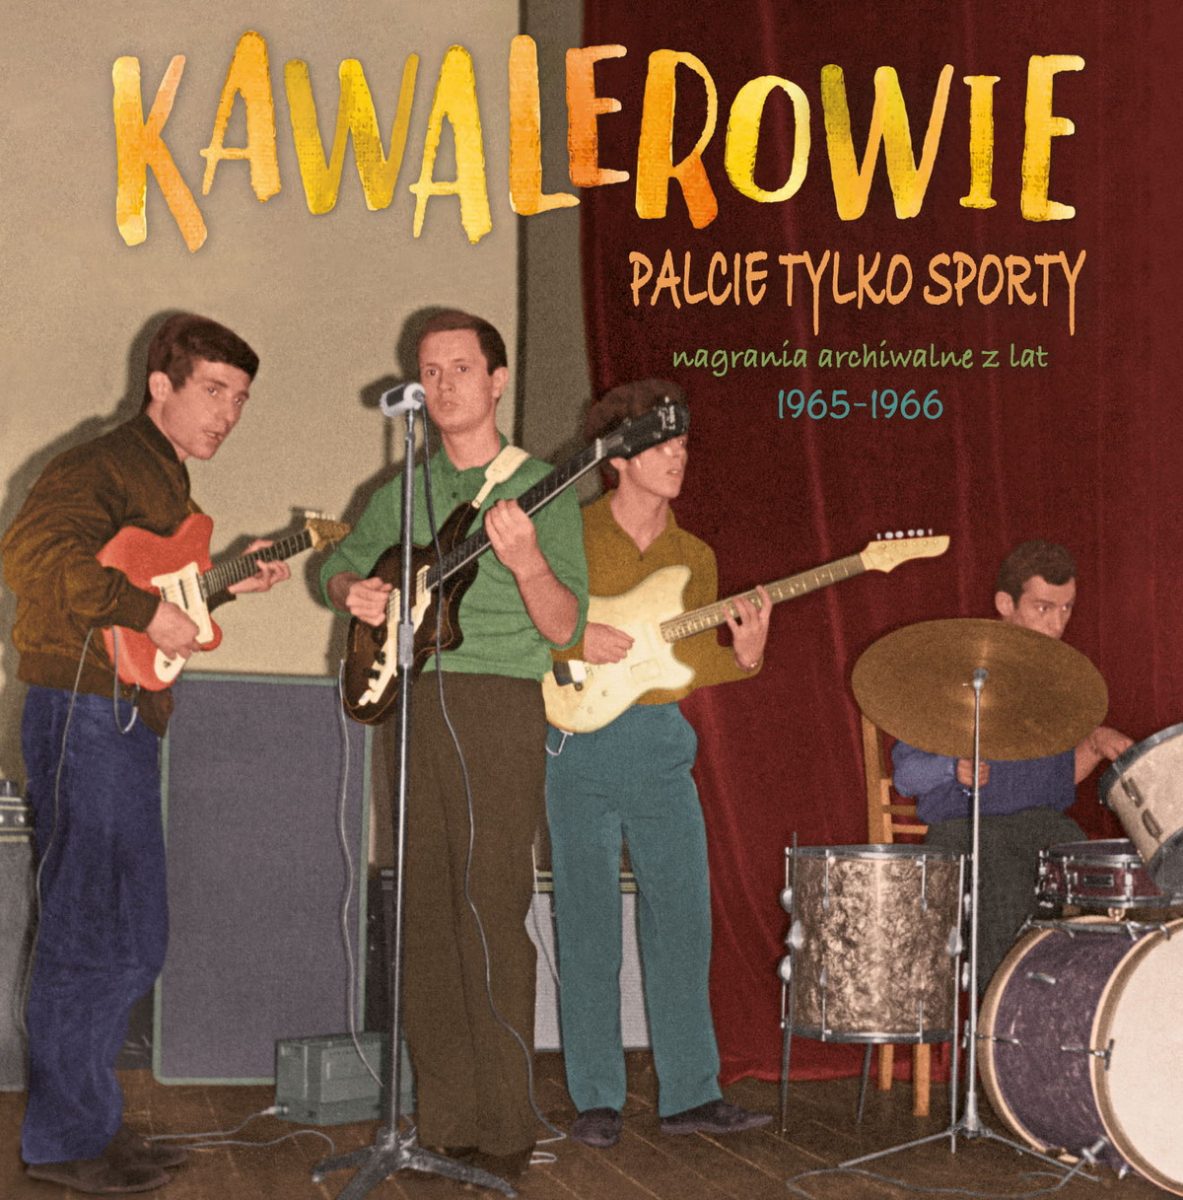 KAWALEROWIE „Palcie tylko sporty (nagrania archiwalne z lat 1965-1966)”